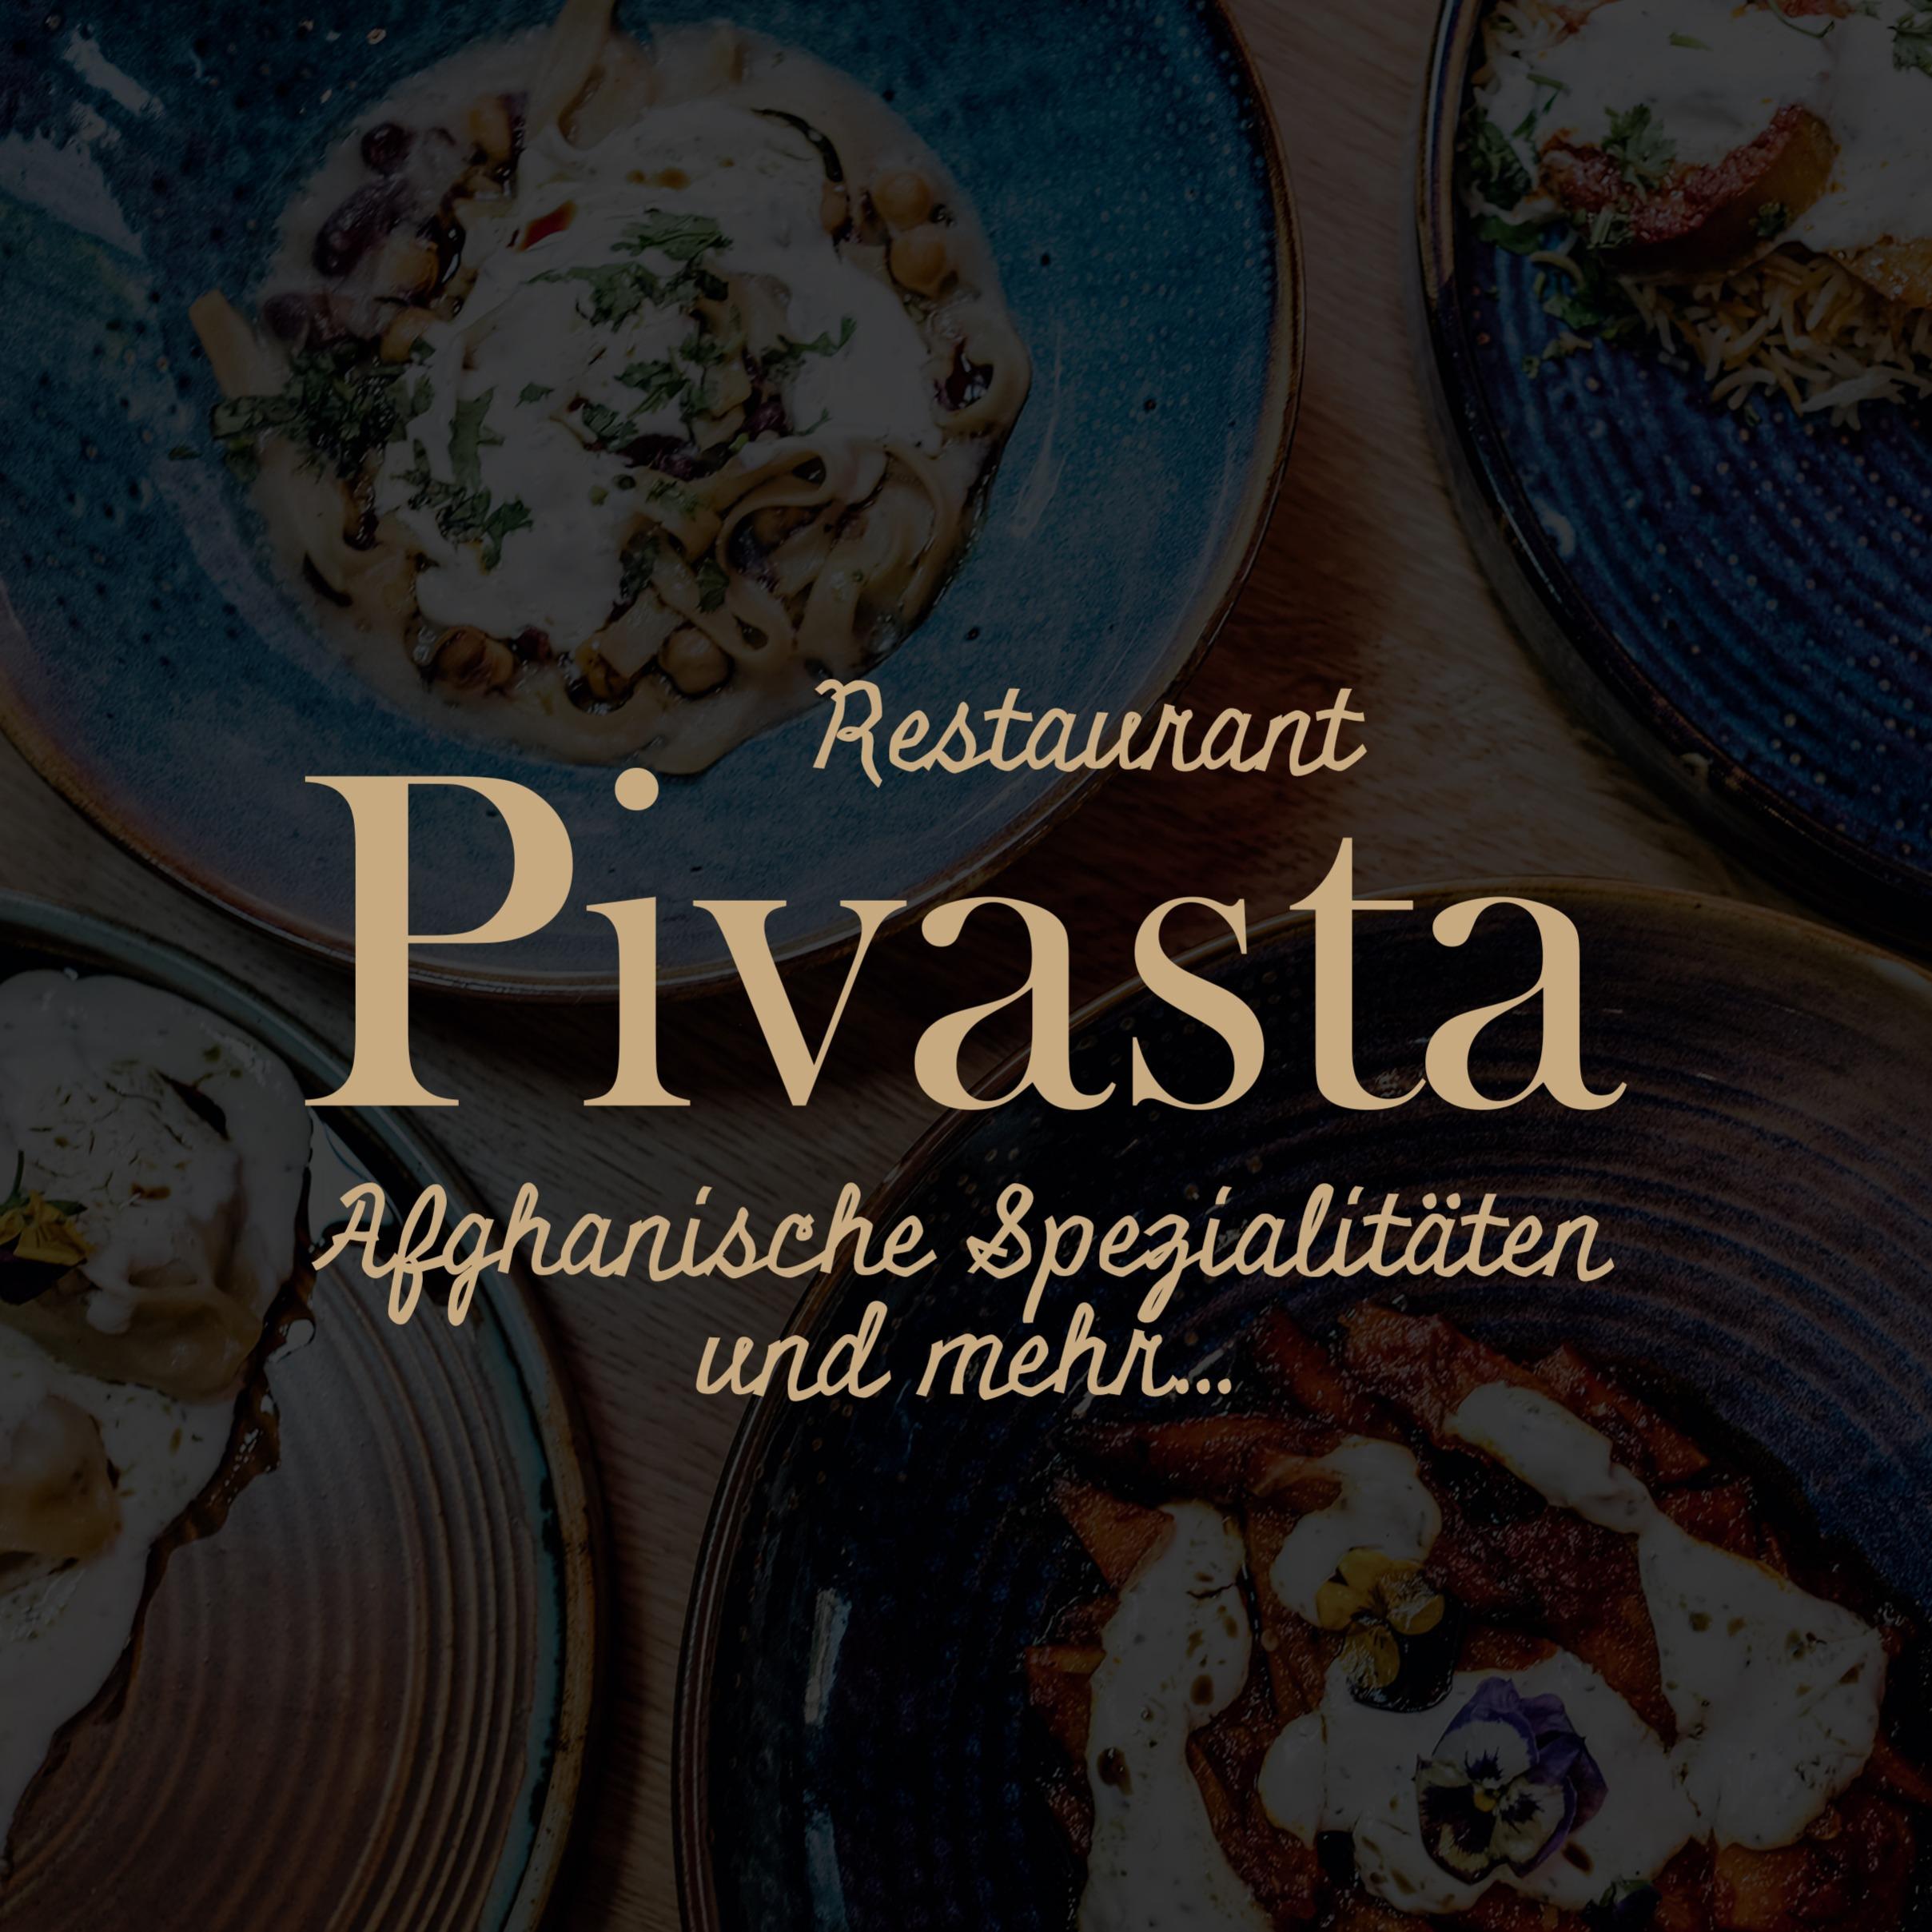 Afghanisches Restaurant Pivasta München Logo